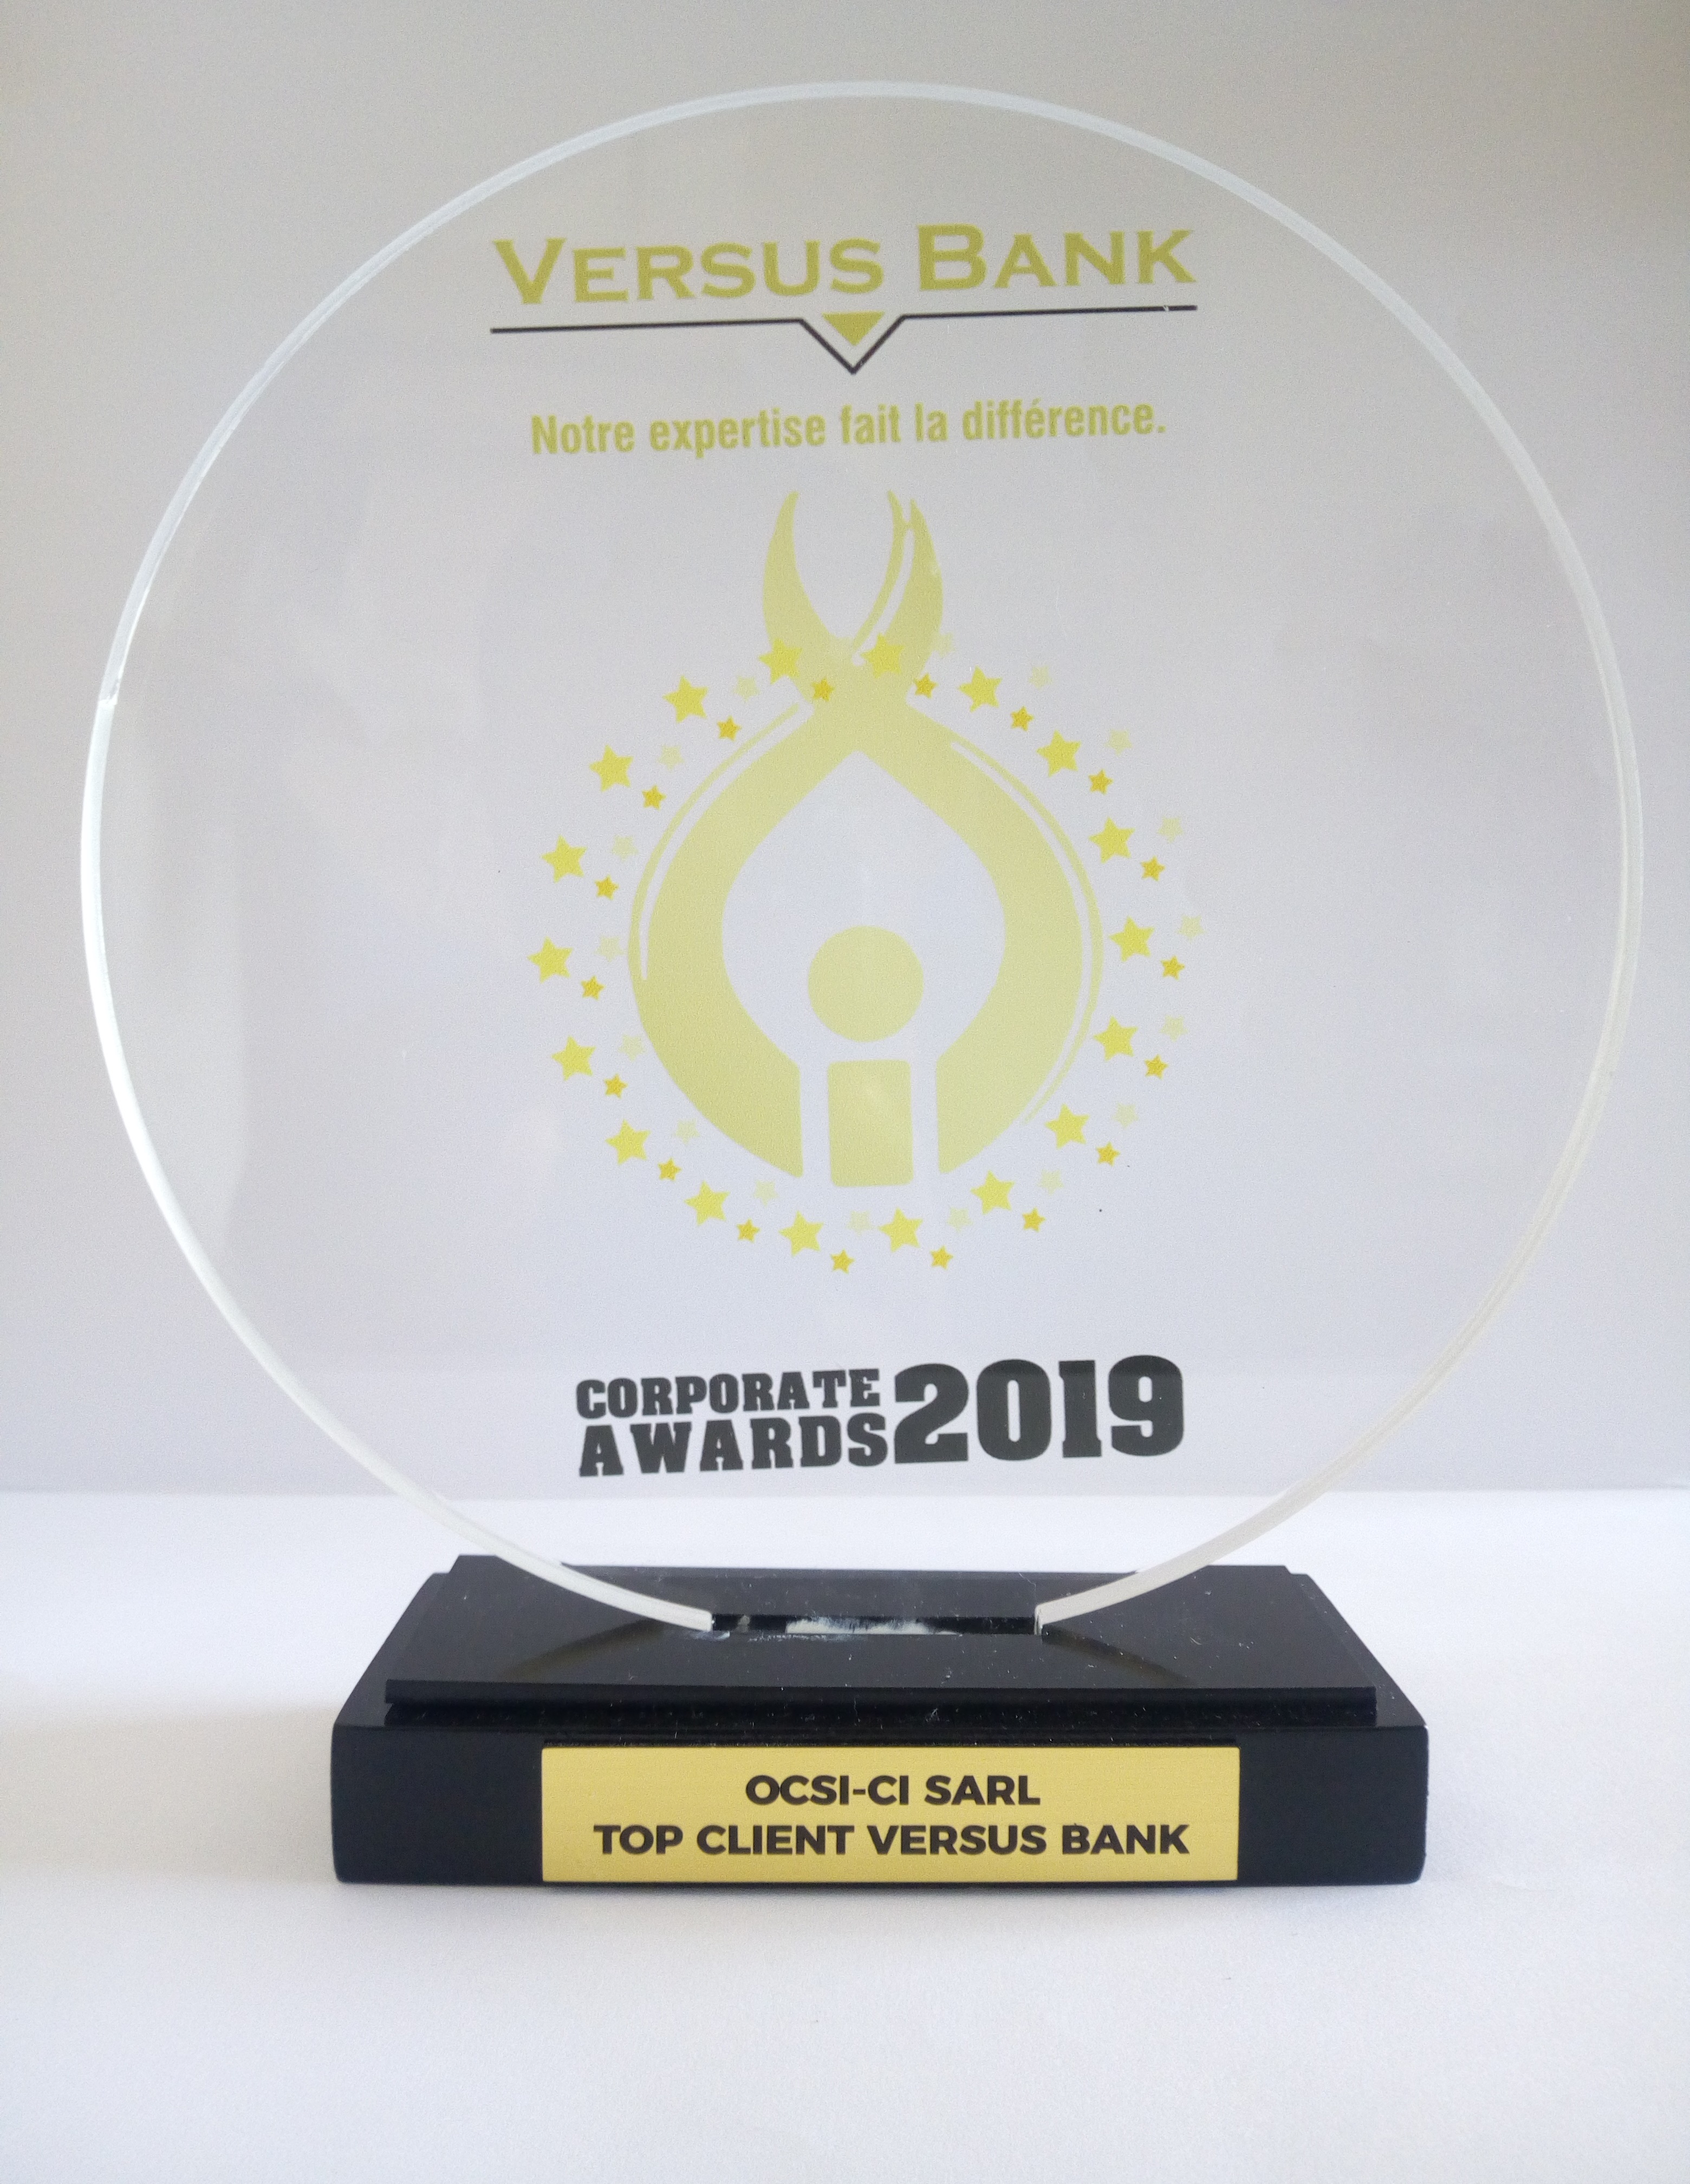 CORPORATE AWARDS 2019 de VERSUS BANK